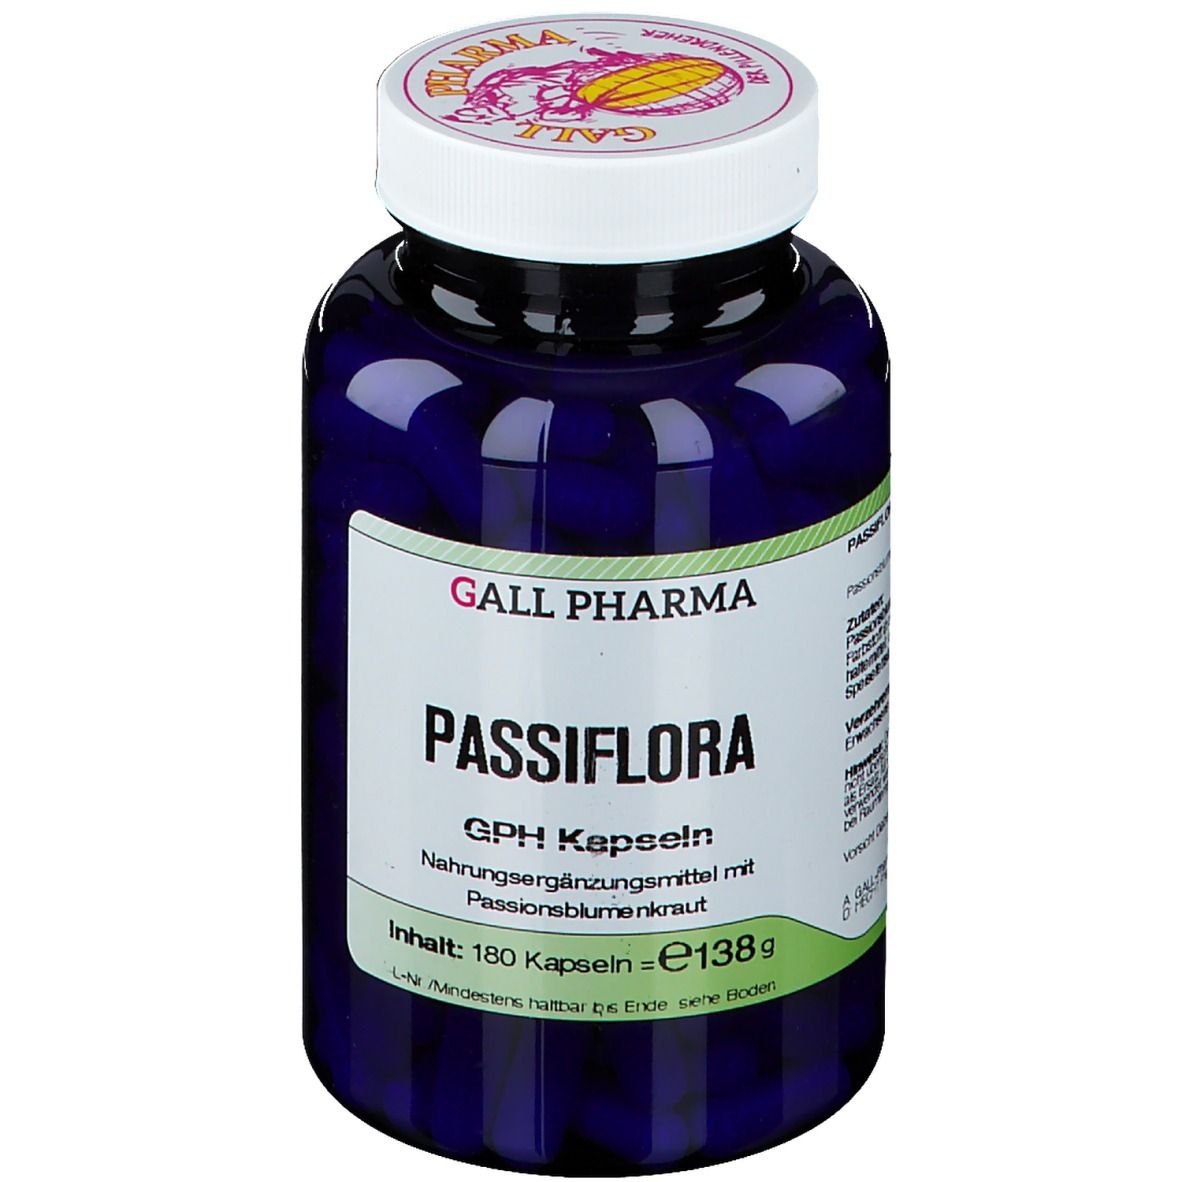 GALL PHARMA Passiflora GPH Kapseln